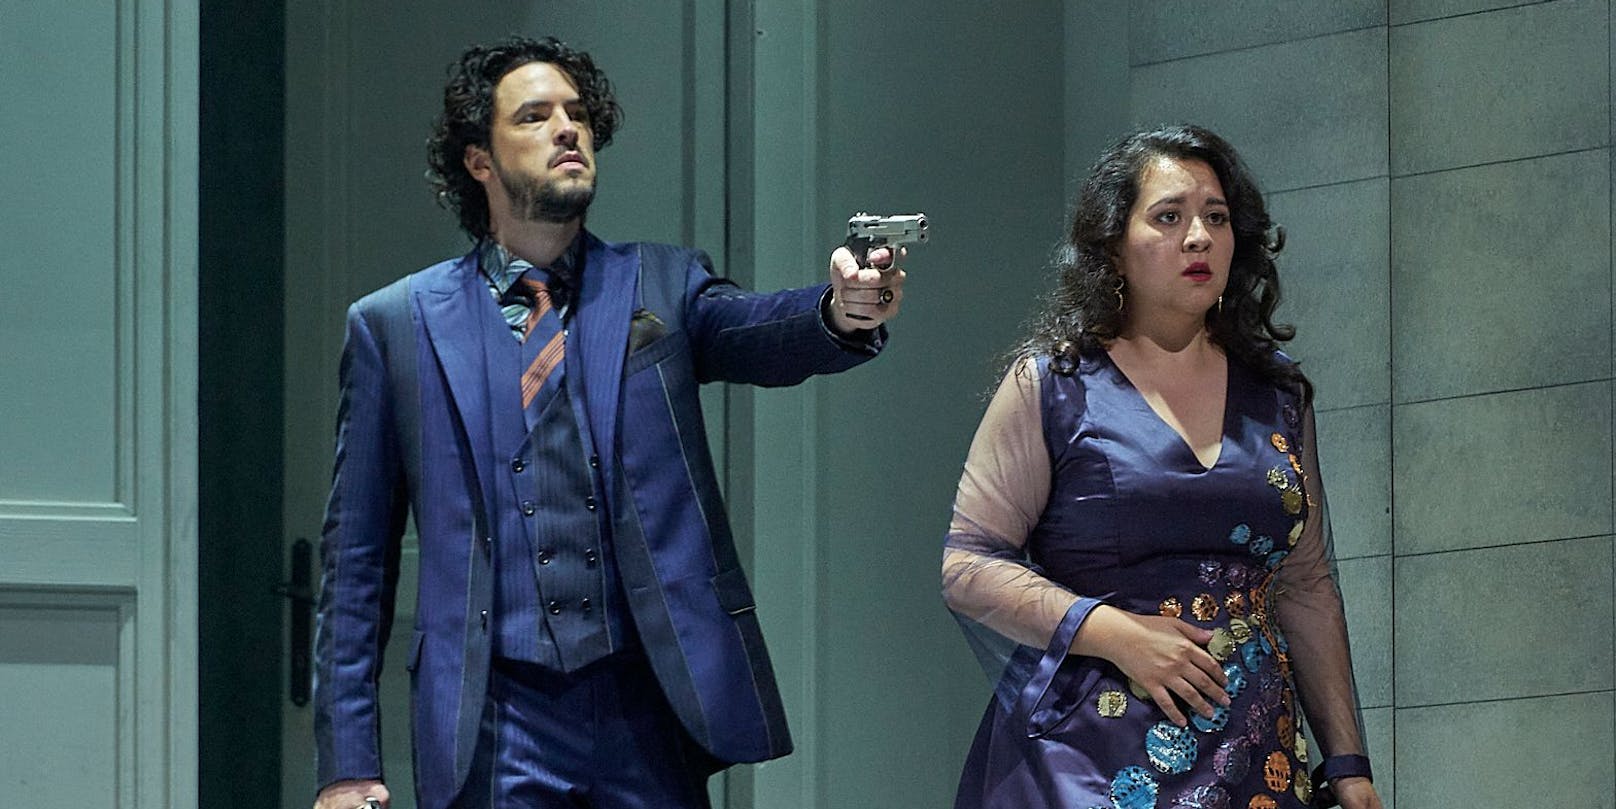 Um die Ehe des Grafen Almaviva (Andrè Schuen) und seiner Gräfin (Adriana González) steht es in "Le nozze di Figaro" nicht besonders gut …